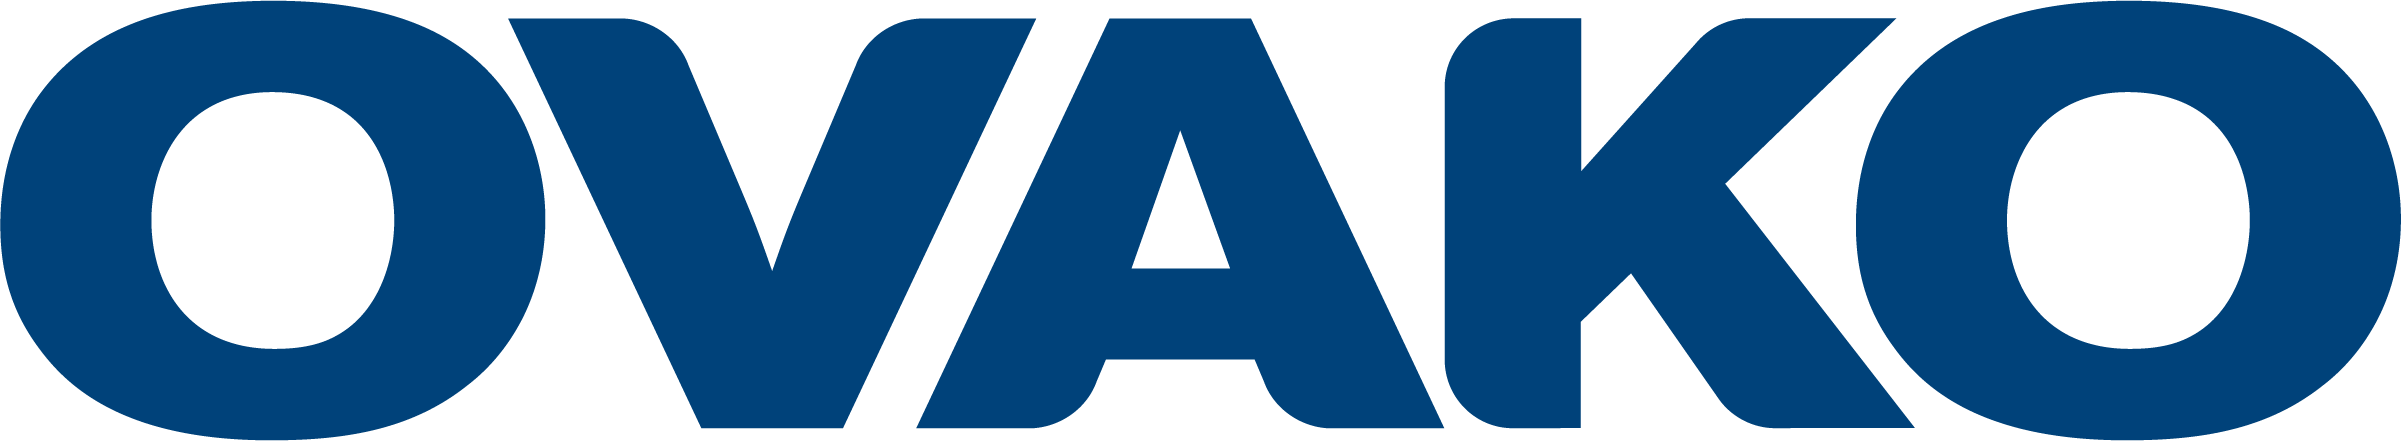 Ovako logo